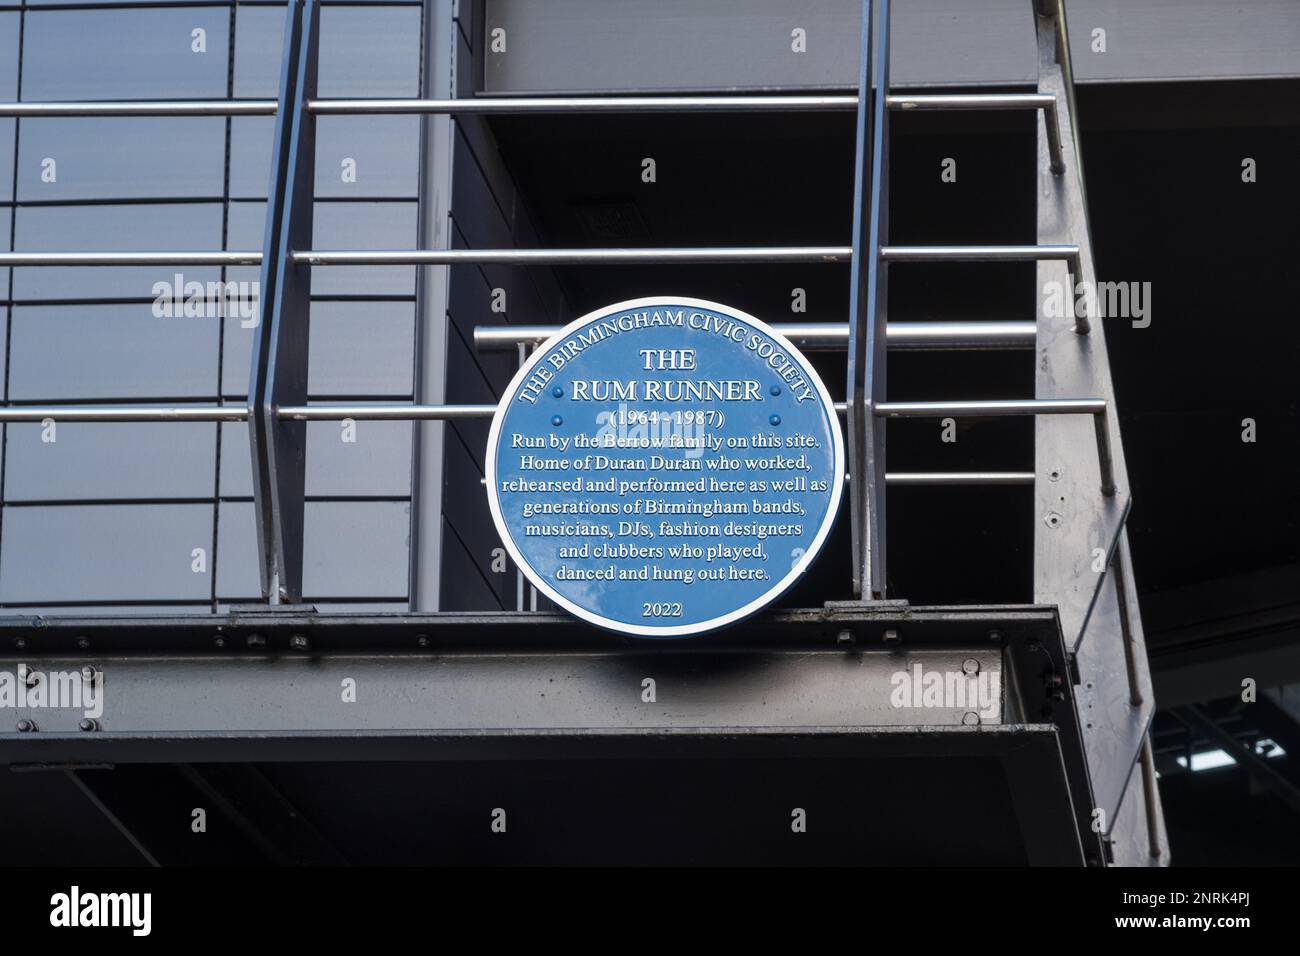 Birmingham Civic Society Placa azul que marca el sitio del club Rum Runner hecho famoso por Duran Duran en Broad Street, Birmingham Foto de stock